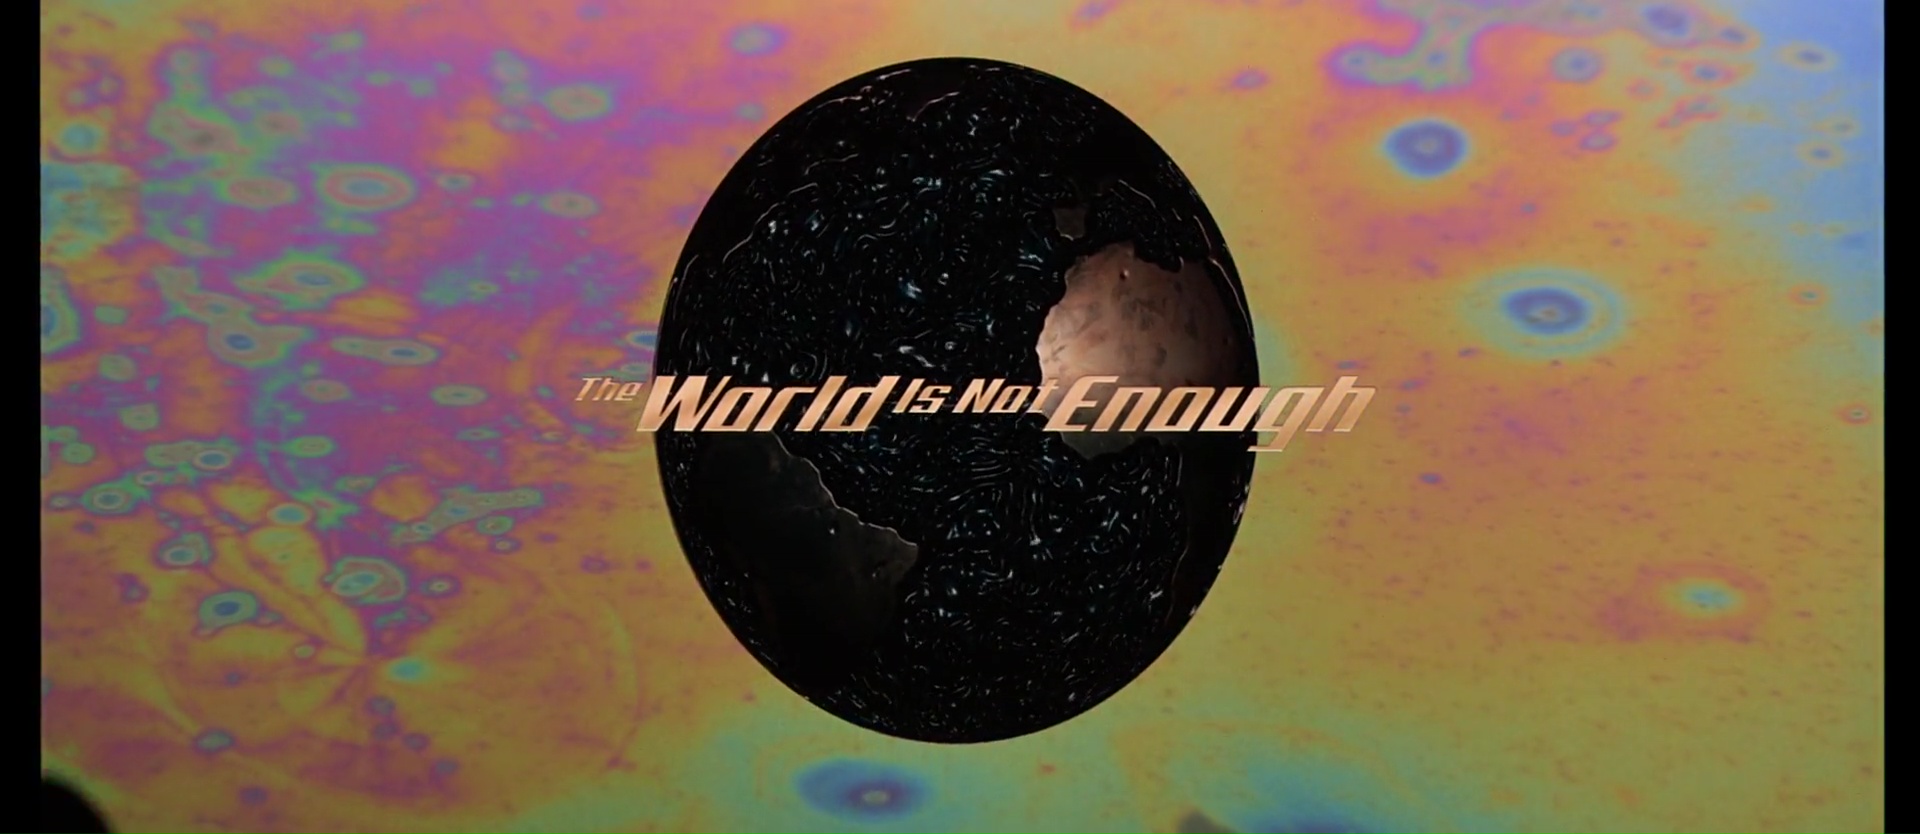 LE MONDE NE SUFFIT PAS (The World is Not Enough) de Michael Apted (1999)